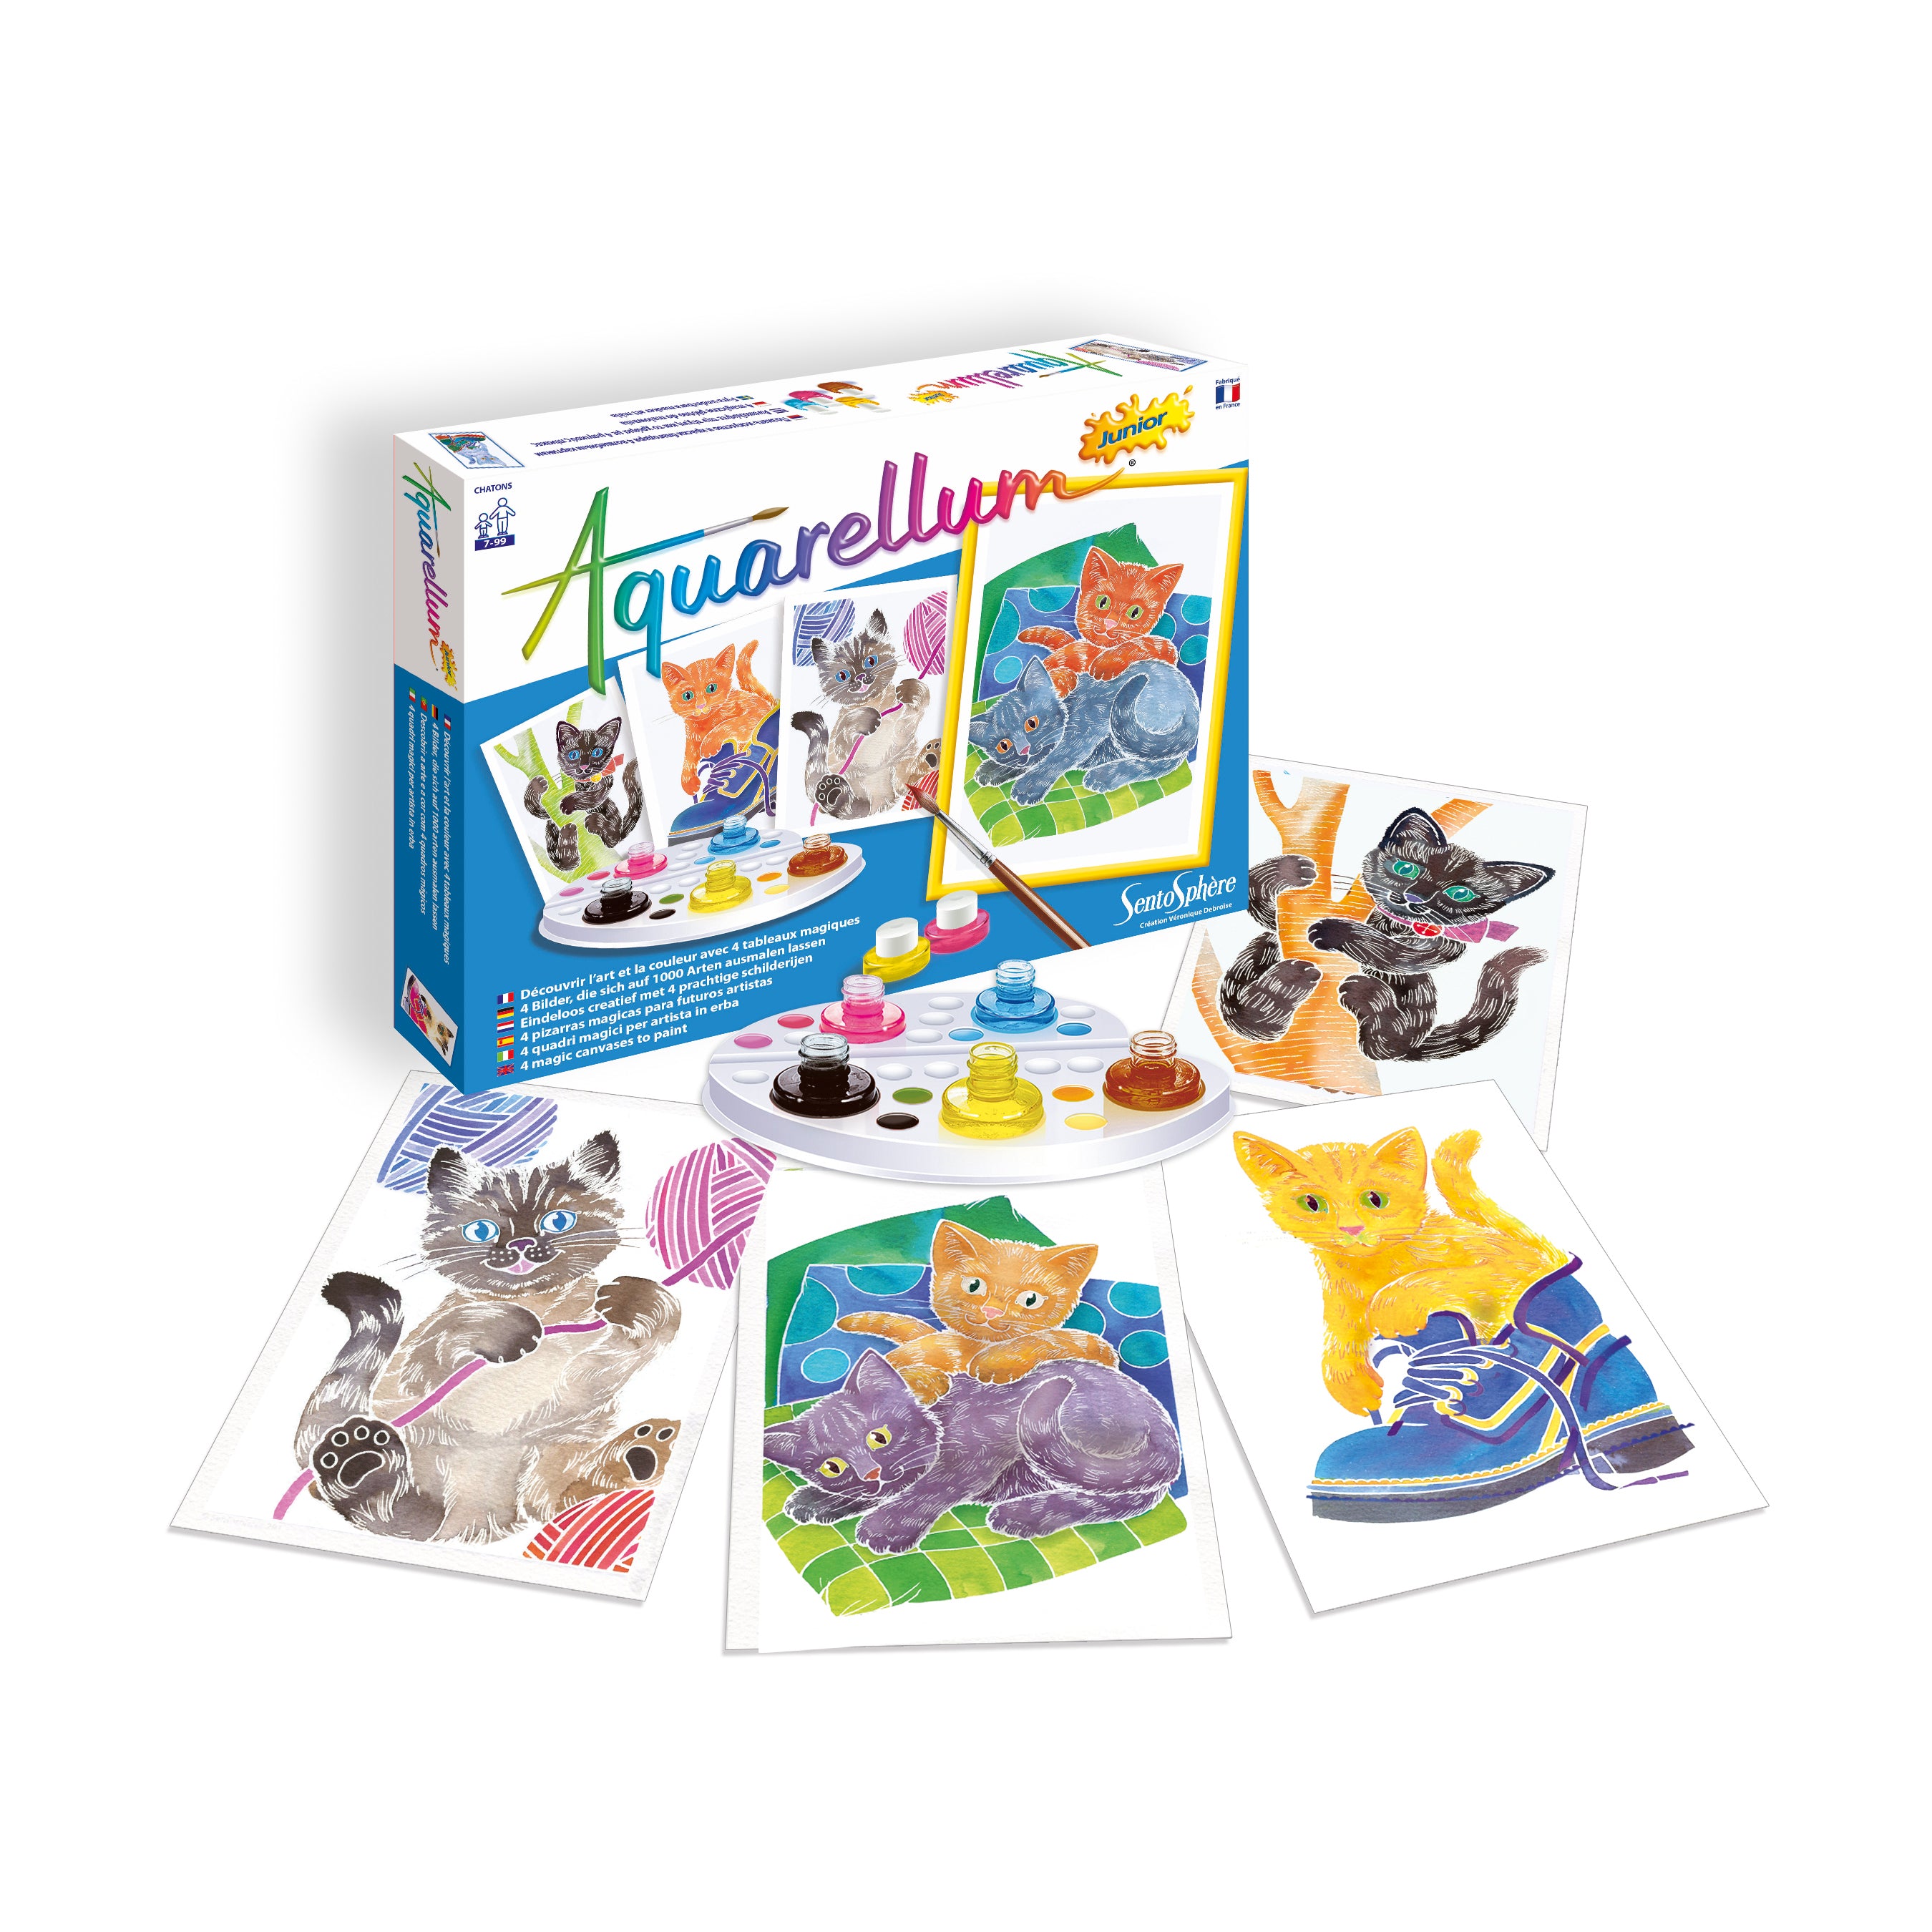  Sento Sphere Aquarellum: Magic Canvas Junior Fairies : Toys &  Games